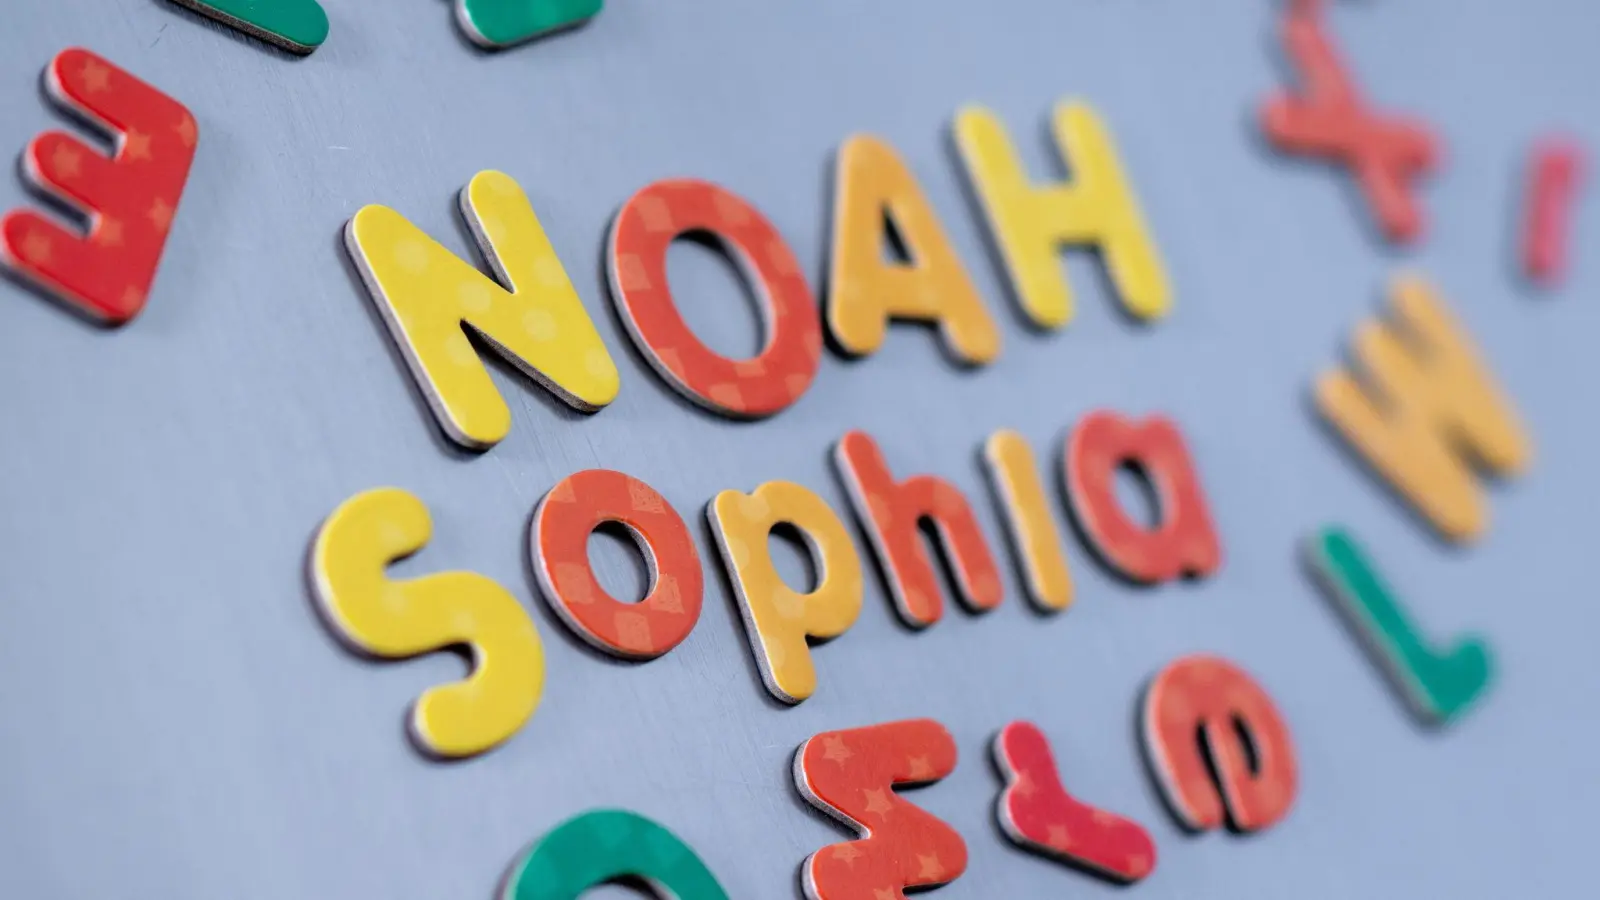 Das Vornamenduo Sophia und Sophie sowie Noah führen die Liste der beliebtesten Vornamen 2023 an. (Bild: Hendrik Schmidt/dpa)